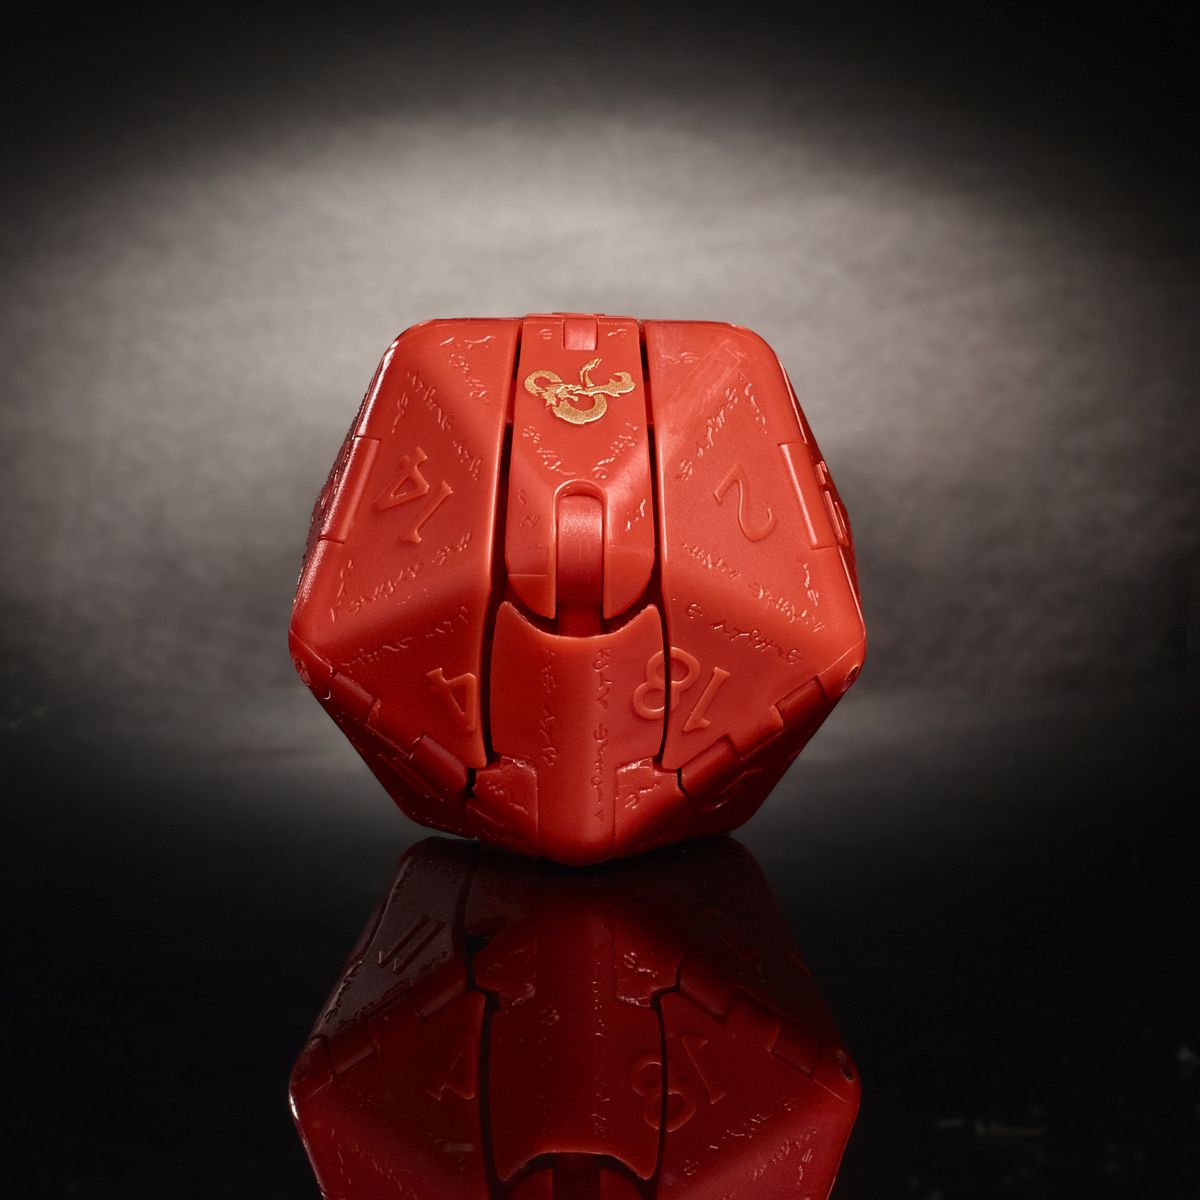 Un drago rosso intrappolato all'interno di un dado a 20 facce.  Una e commerciale dorata luccica nell'illuminazione dello studio.